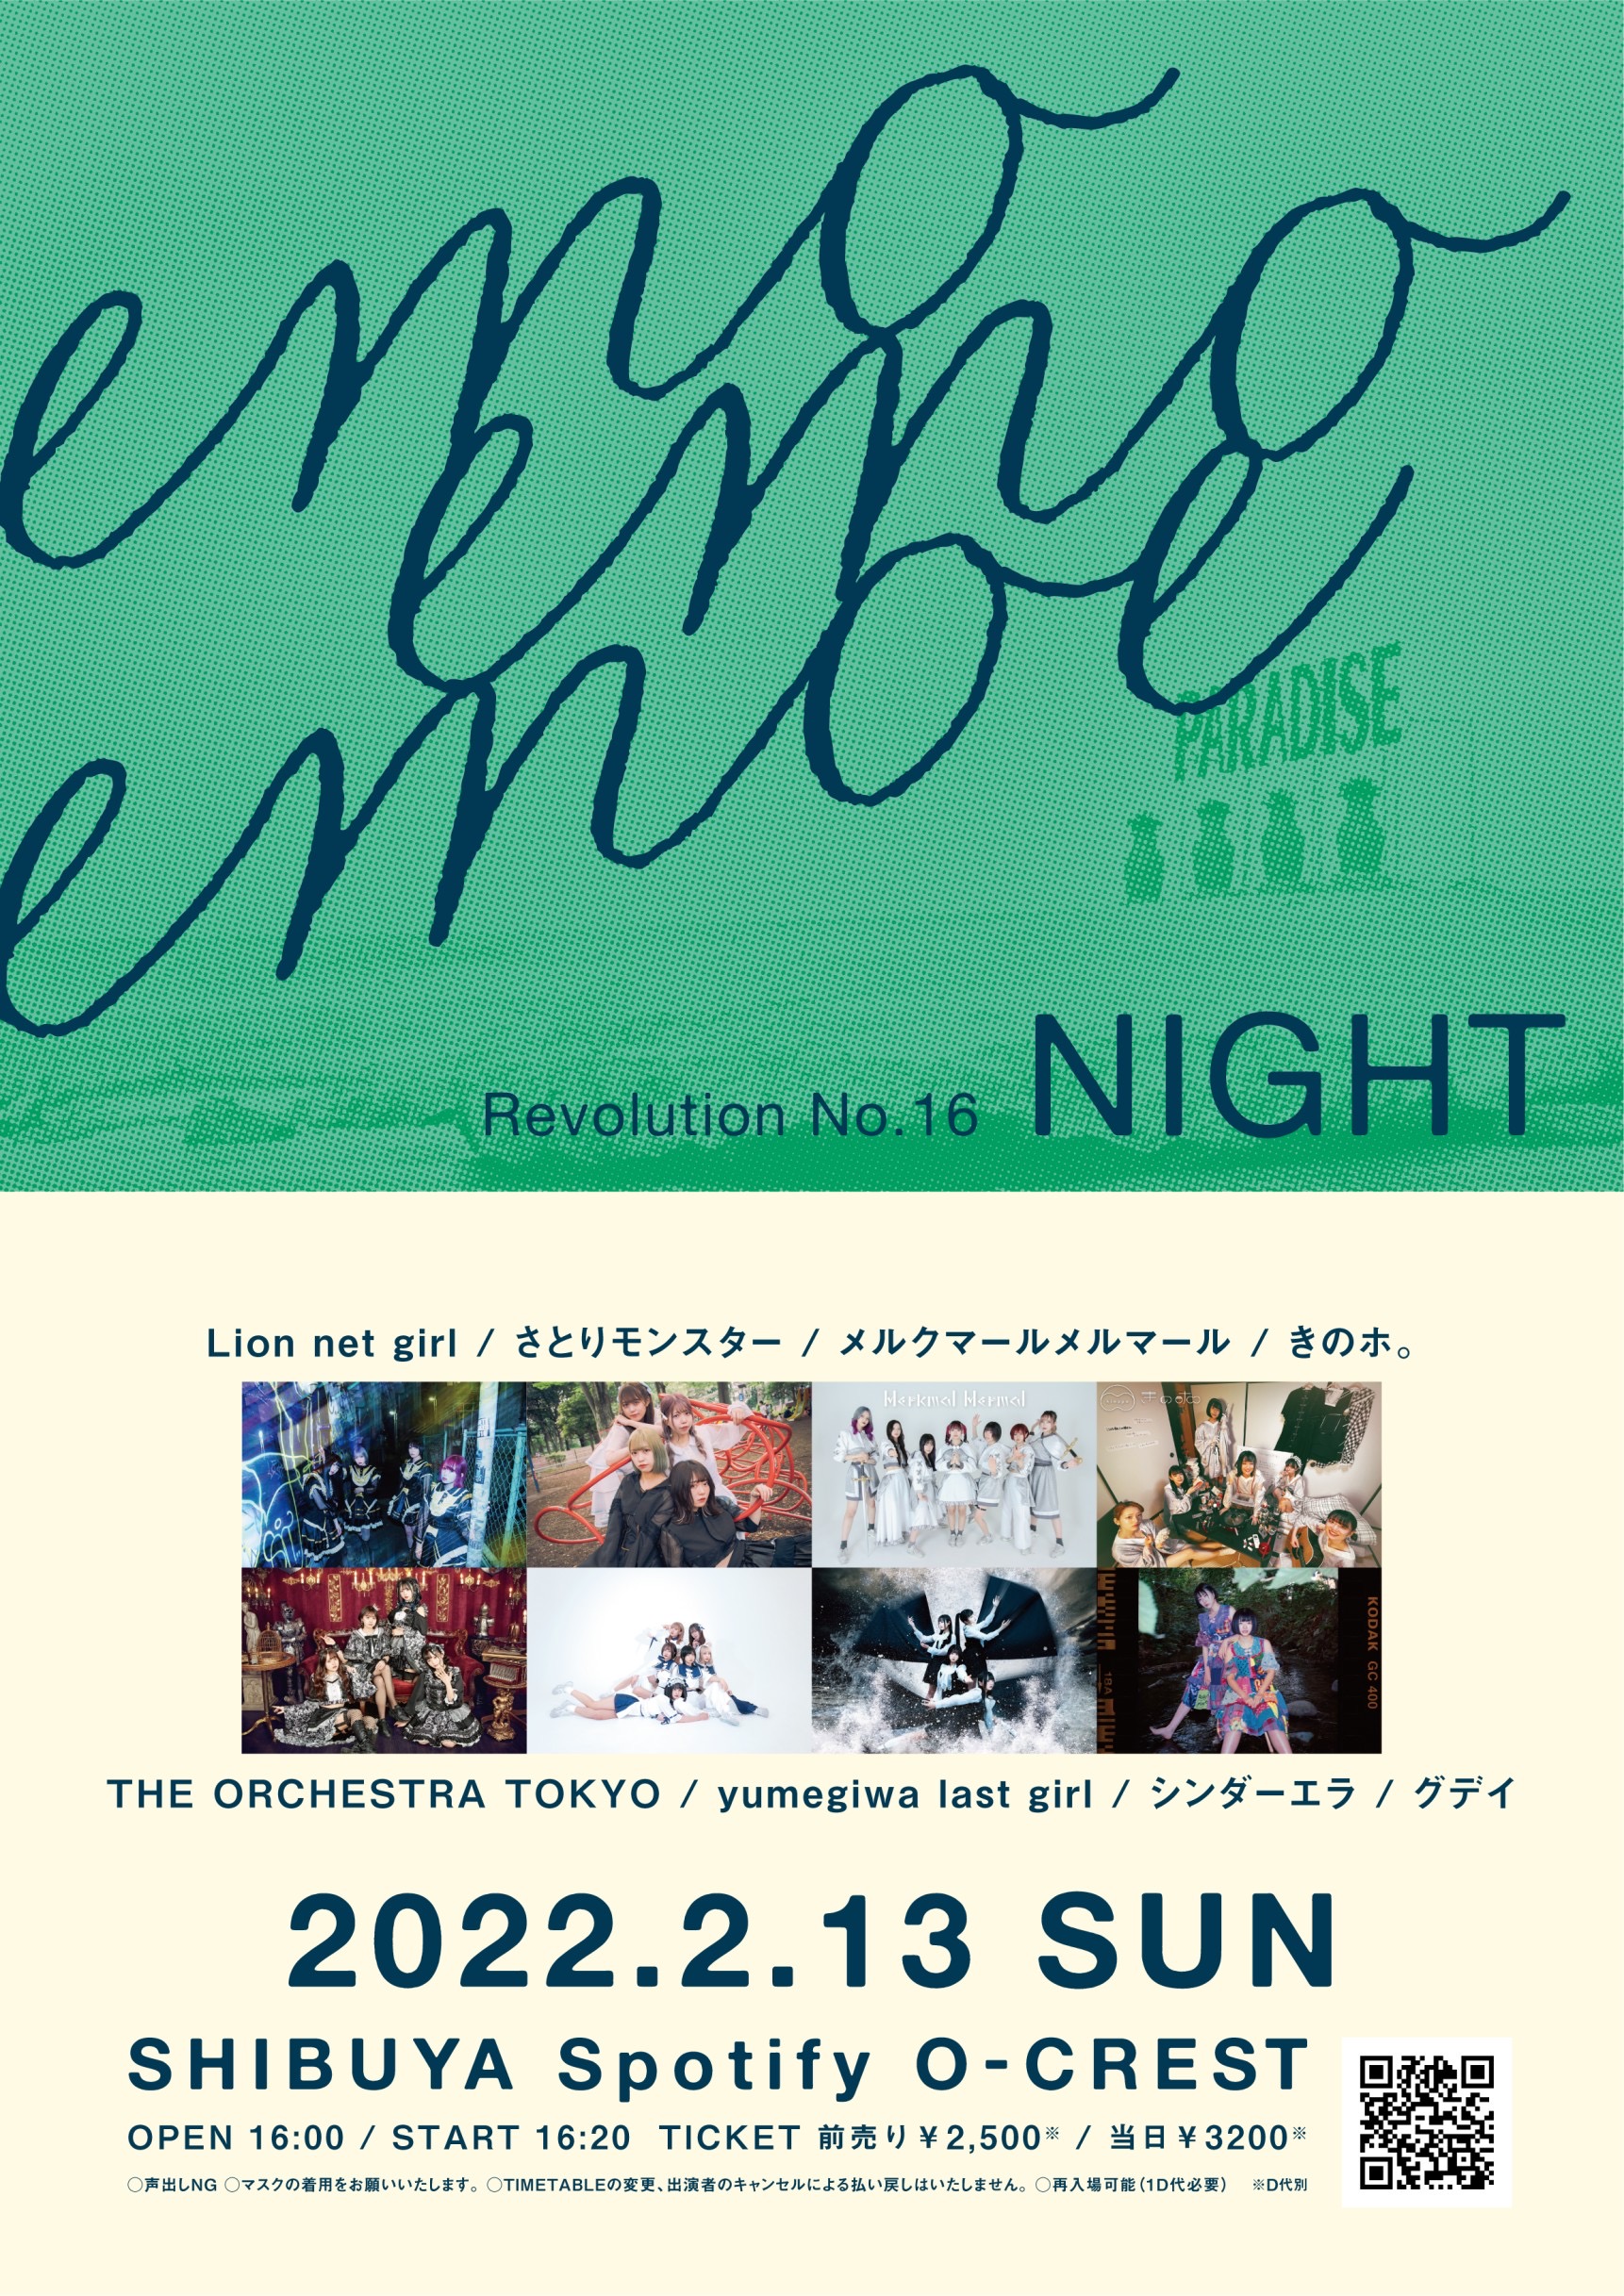 『emoemoemoe』 REVOLUTION No. 16 (NIGHT)